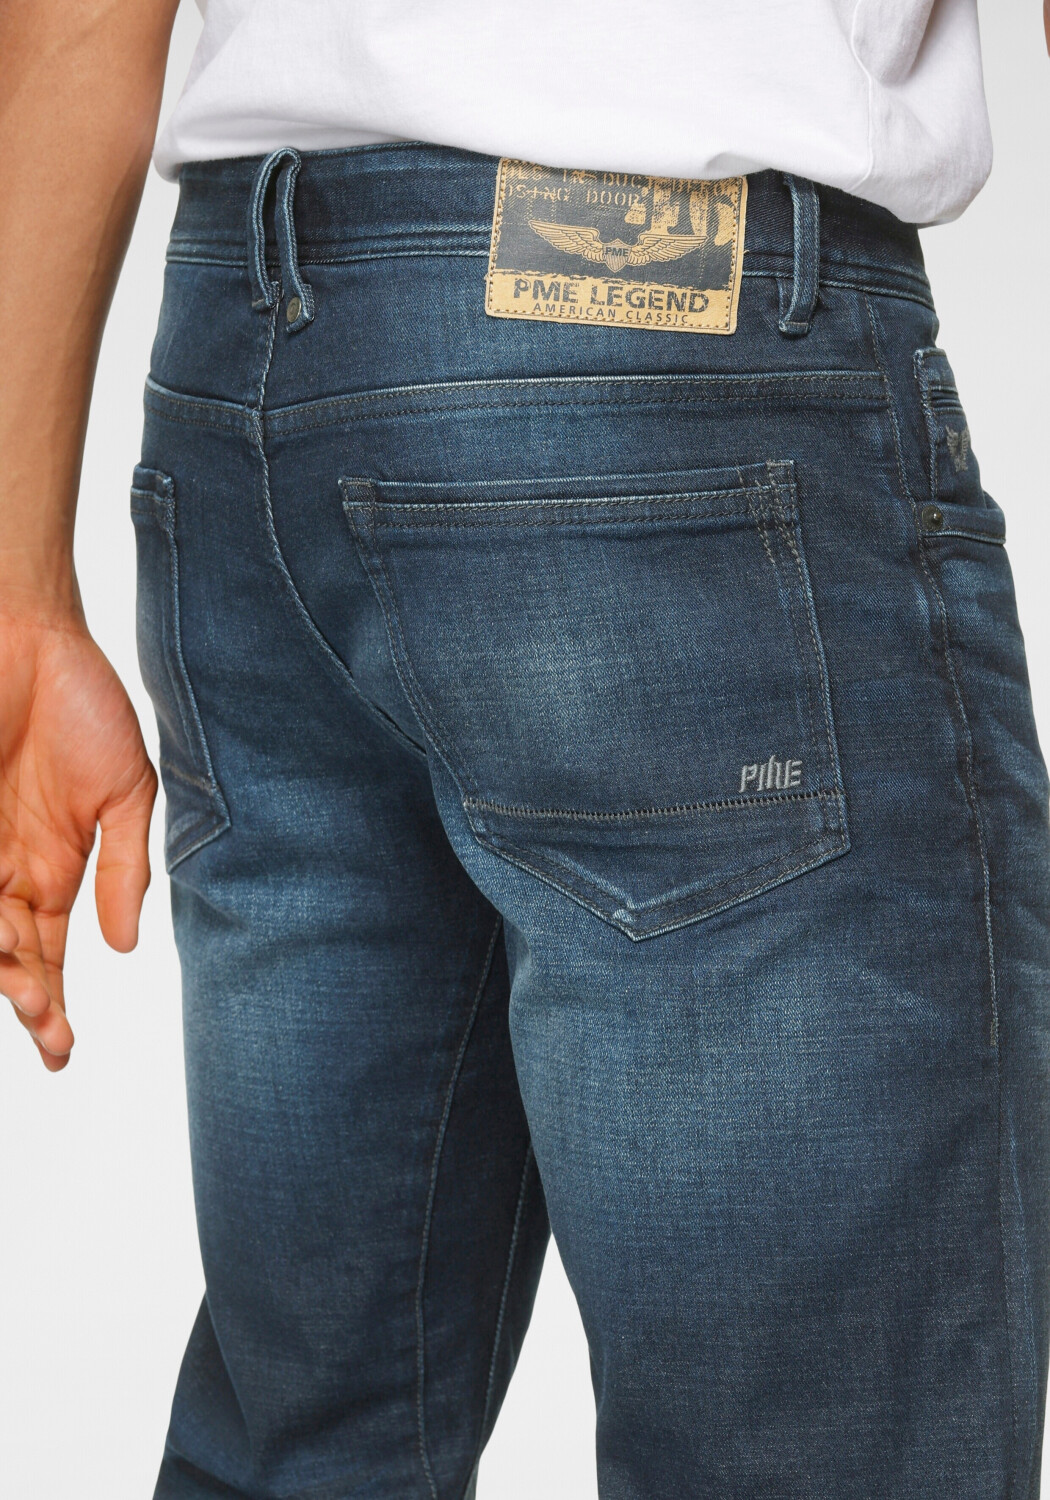 PME Legend Tailwheel Slim Fit Jeans dark wash ab 49,99 € | Preisvergleich  bei